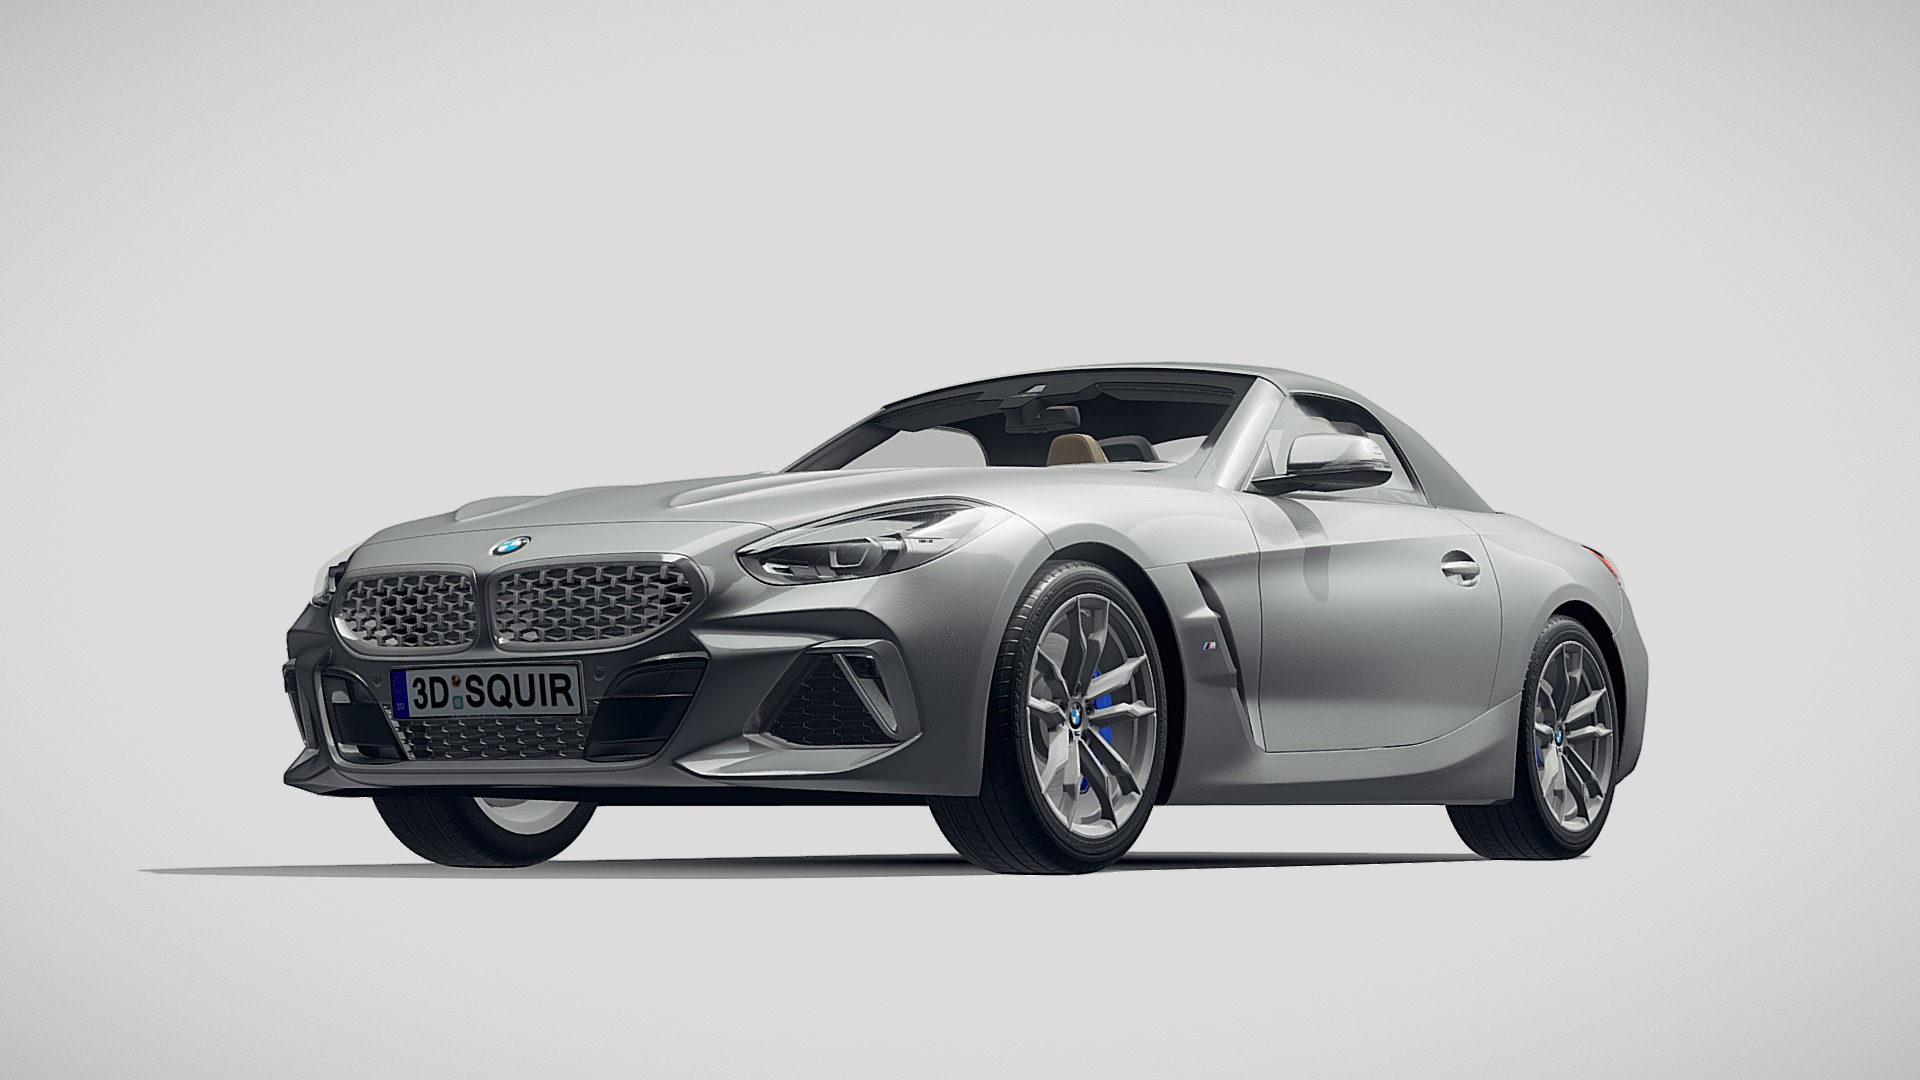 3D model BMW Z4 m-sport 2019 - This is a 3D model of the BMW Z4 m-sport 2019. The 3D model is about a silver sports car.